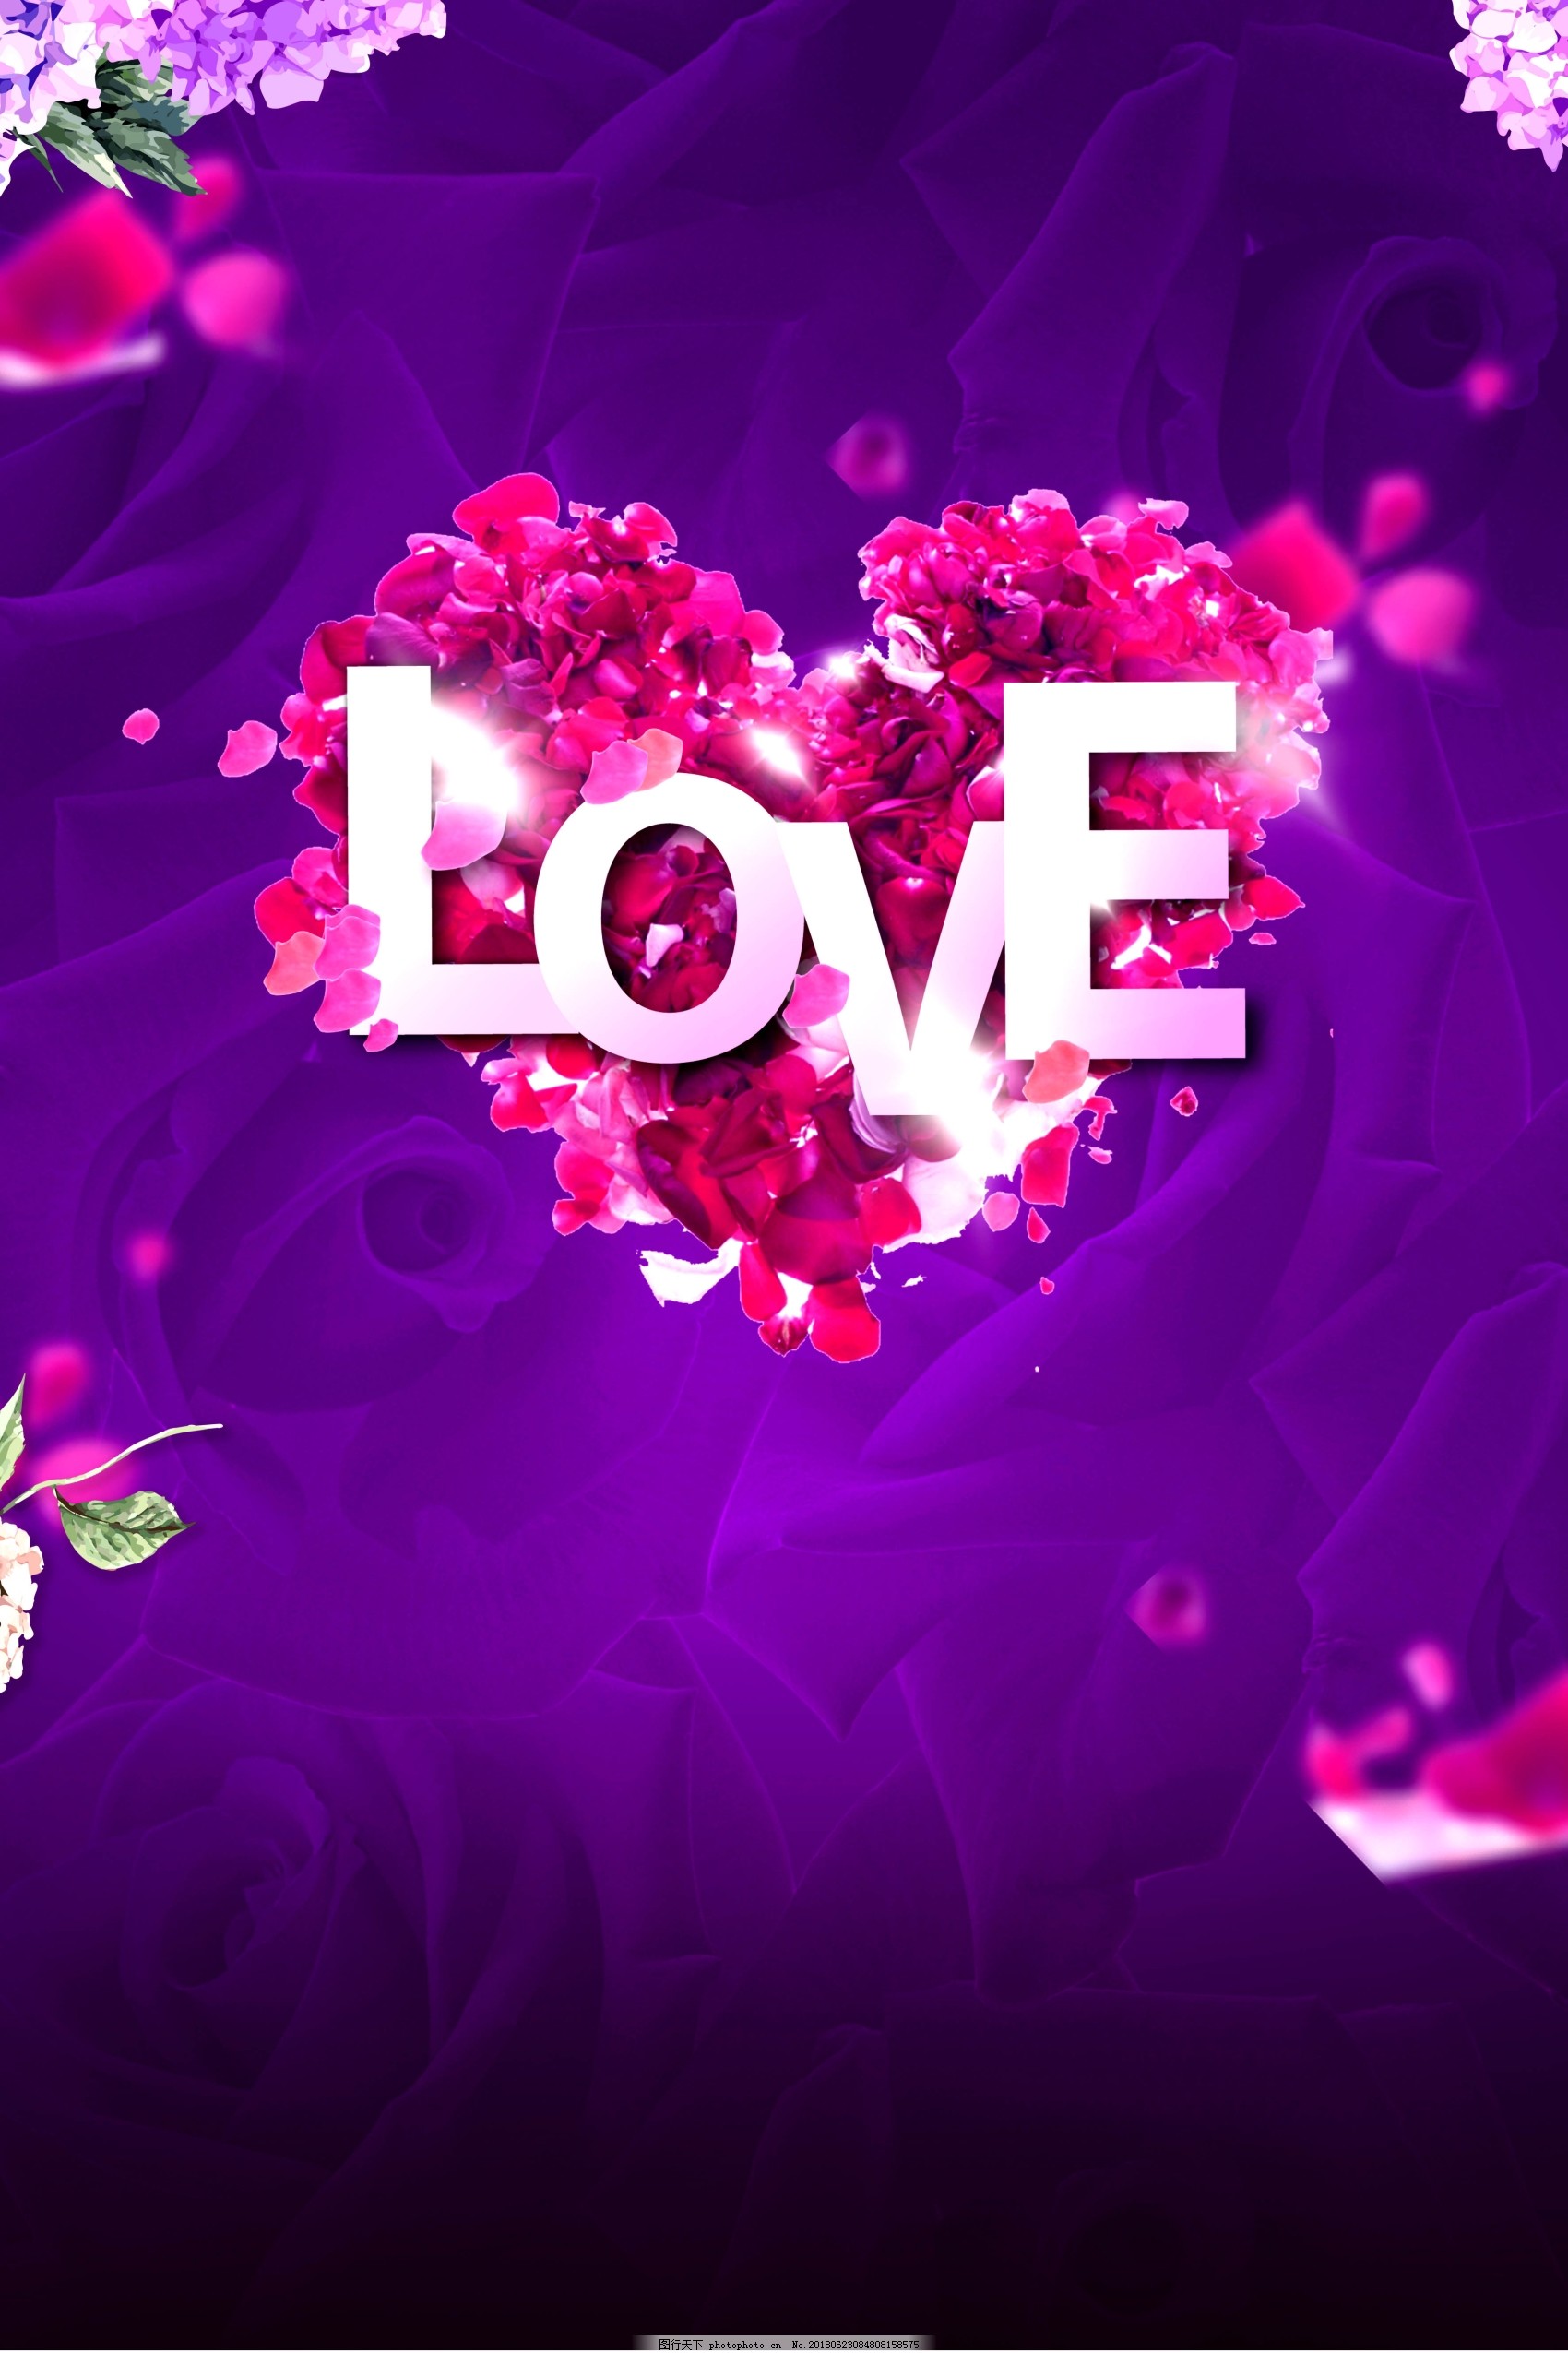 紫色爱情桌面背景图片高清大图预览1920x1080_设计壁纸下载_墨鱼部落格